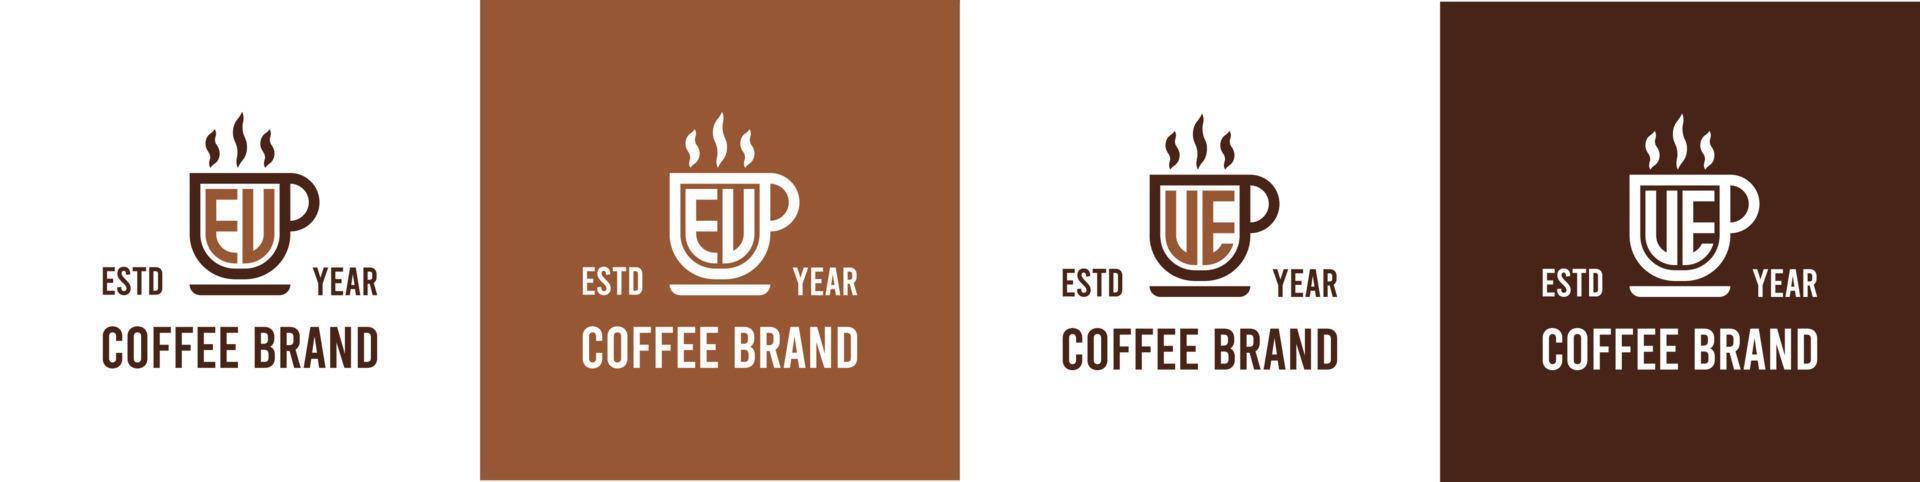 brief EU en ue koffie logo, geschikt voor ieder bedrijf verwant naar koffie, thee, of andere met EU of ue initialen. vector